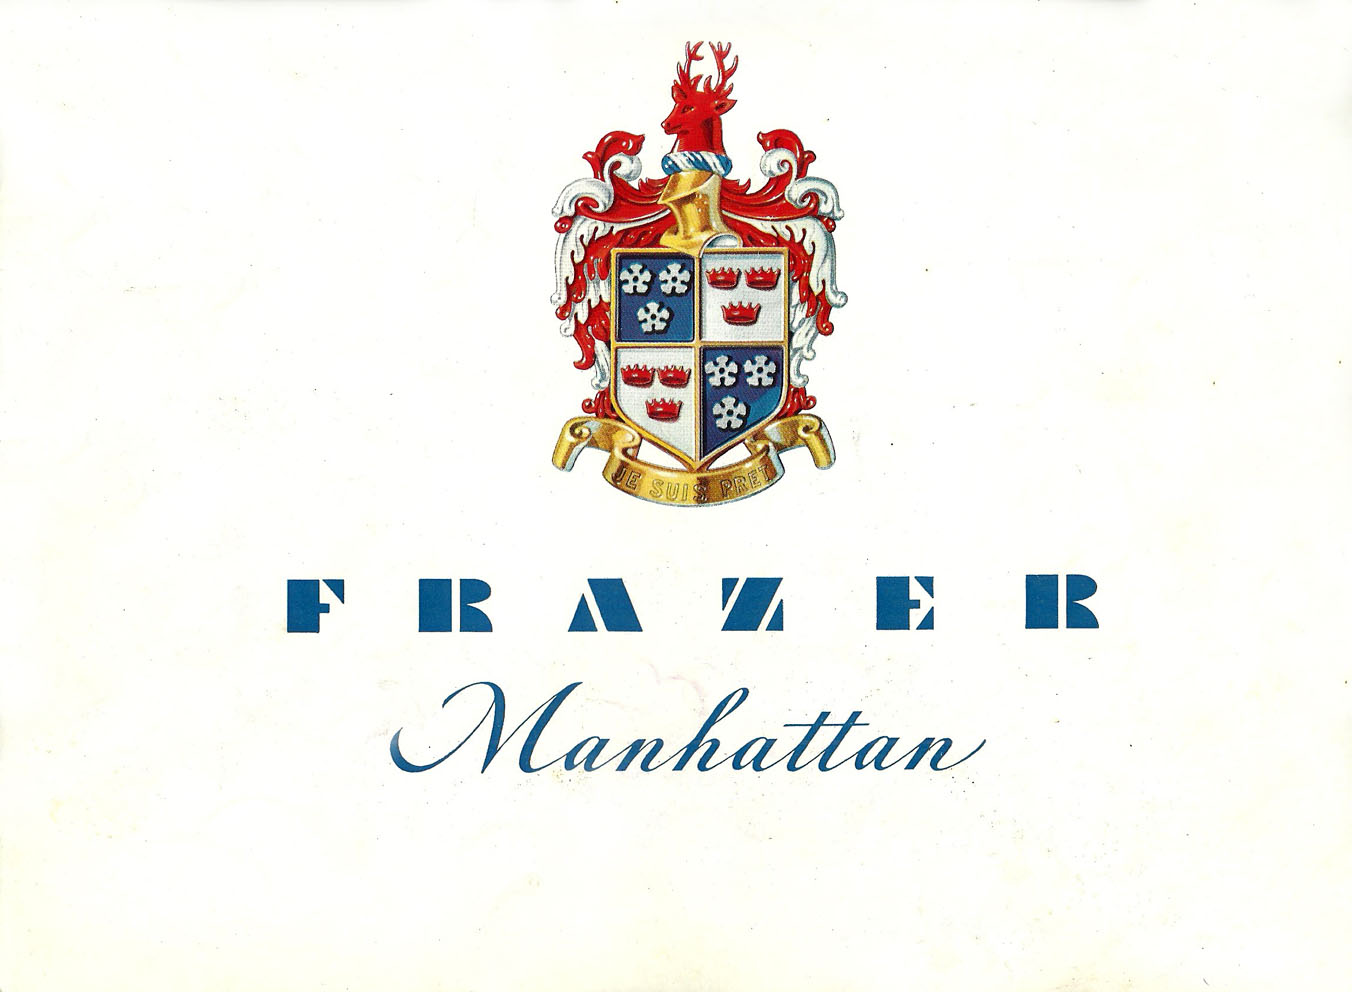 1948_Frazer_Manhattan-01